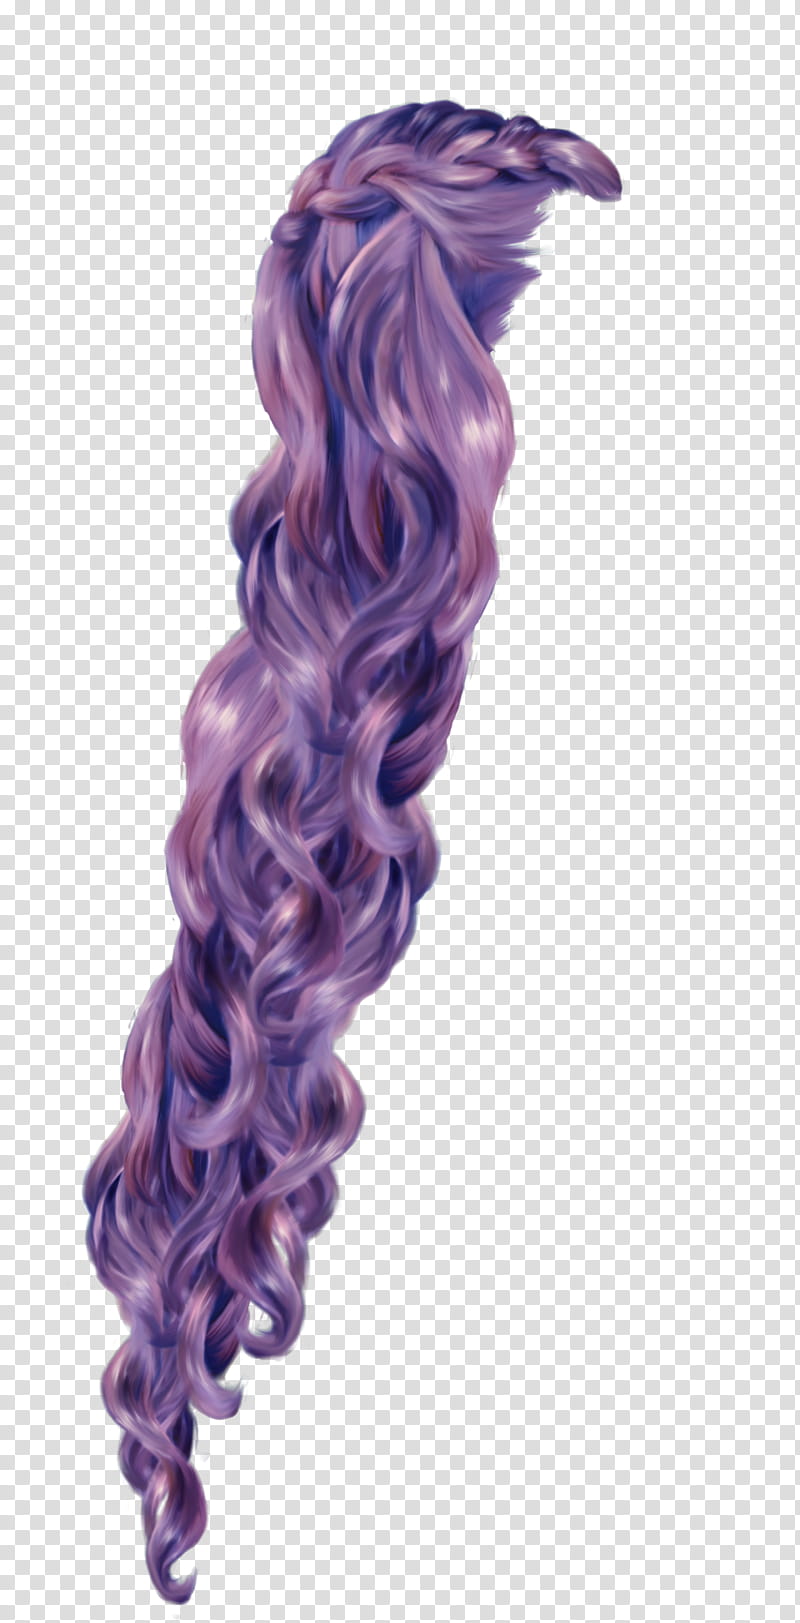 Rapunzel Purple, long purple hair illustration transparent background PNG clipart